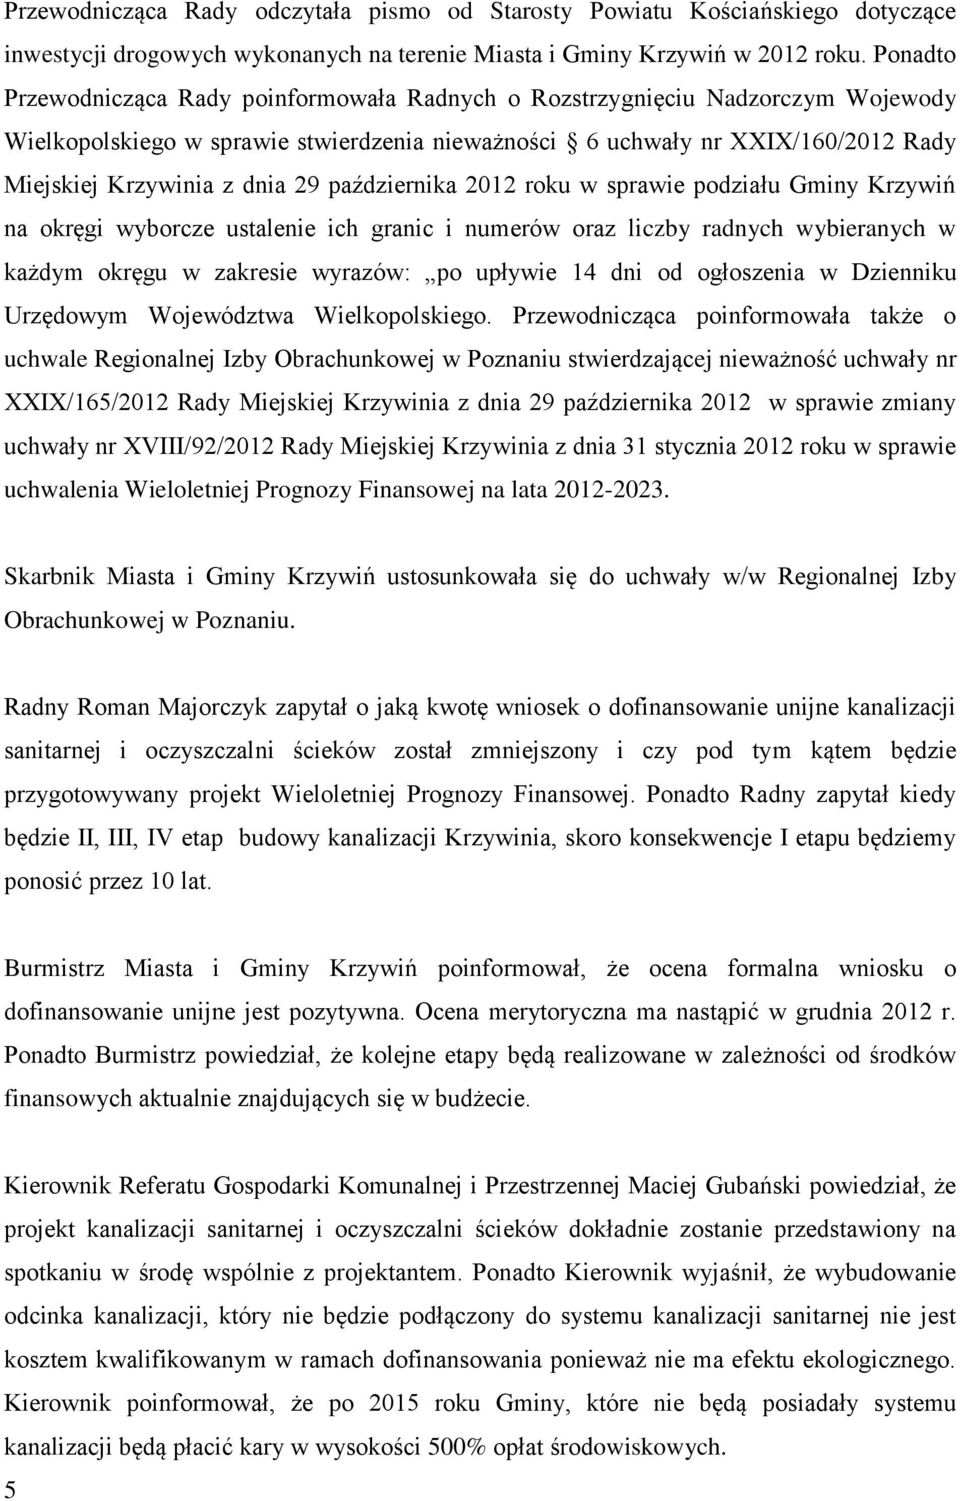 29 października 2012 roku w sprawie podziału Gminy Krzywiń na okręgi wyborcze ustalenie ich granic i numerów oraz liczby radnych wybieranych w każdym okręgu w zakresie wyrazów: po upływie 14 dni od